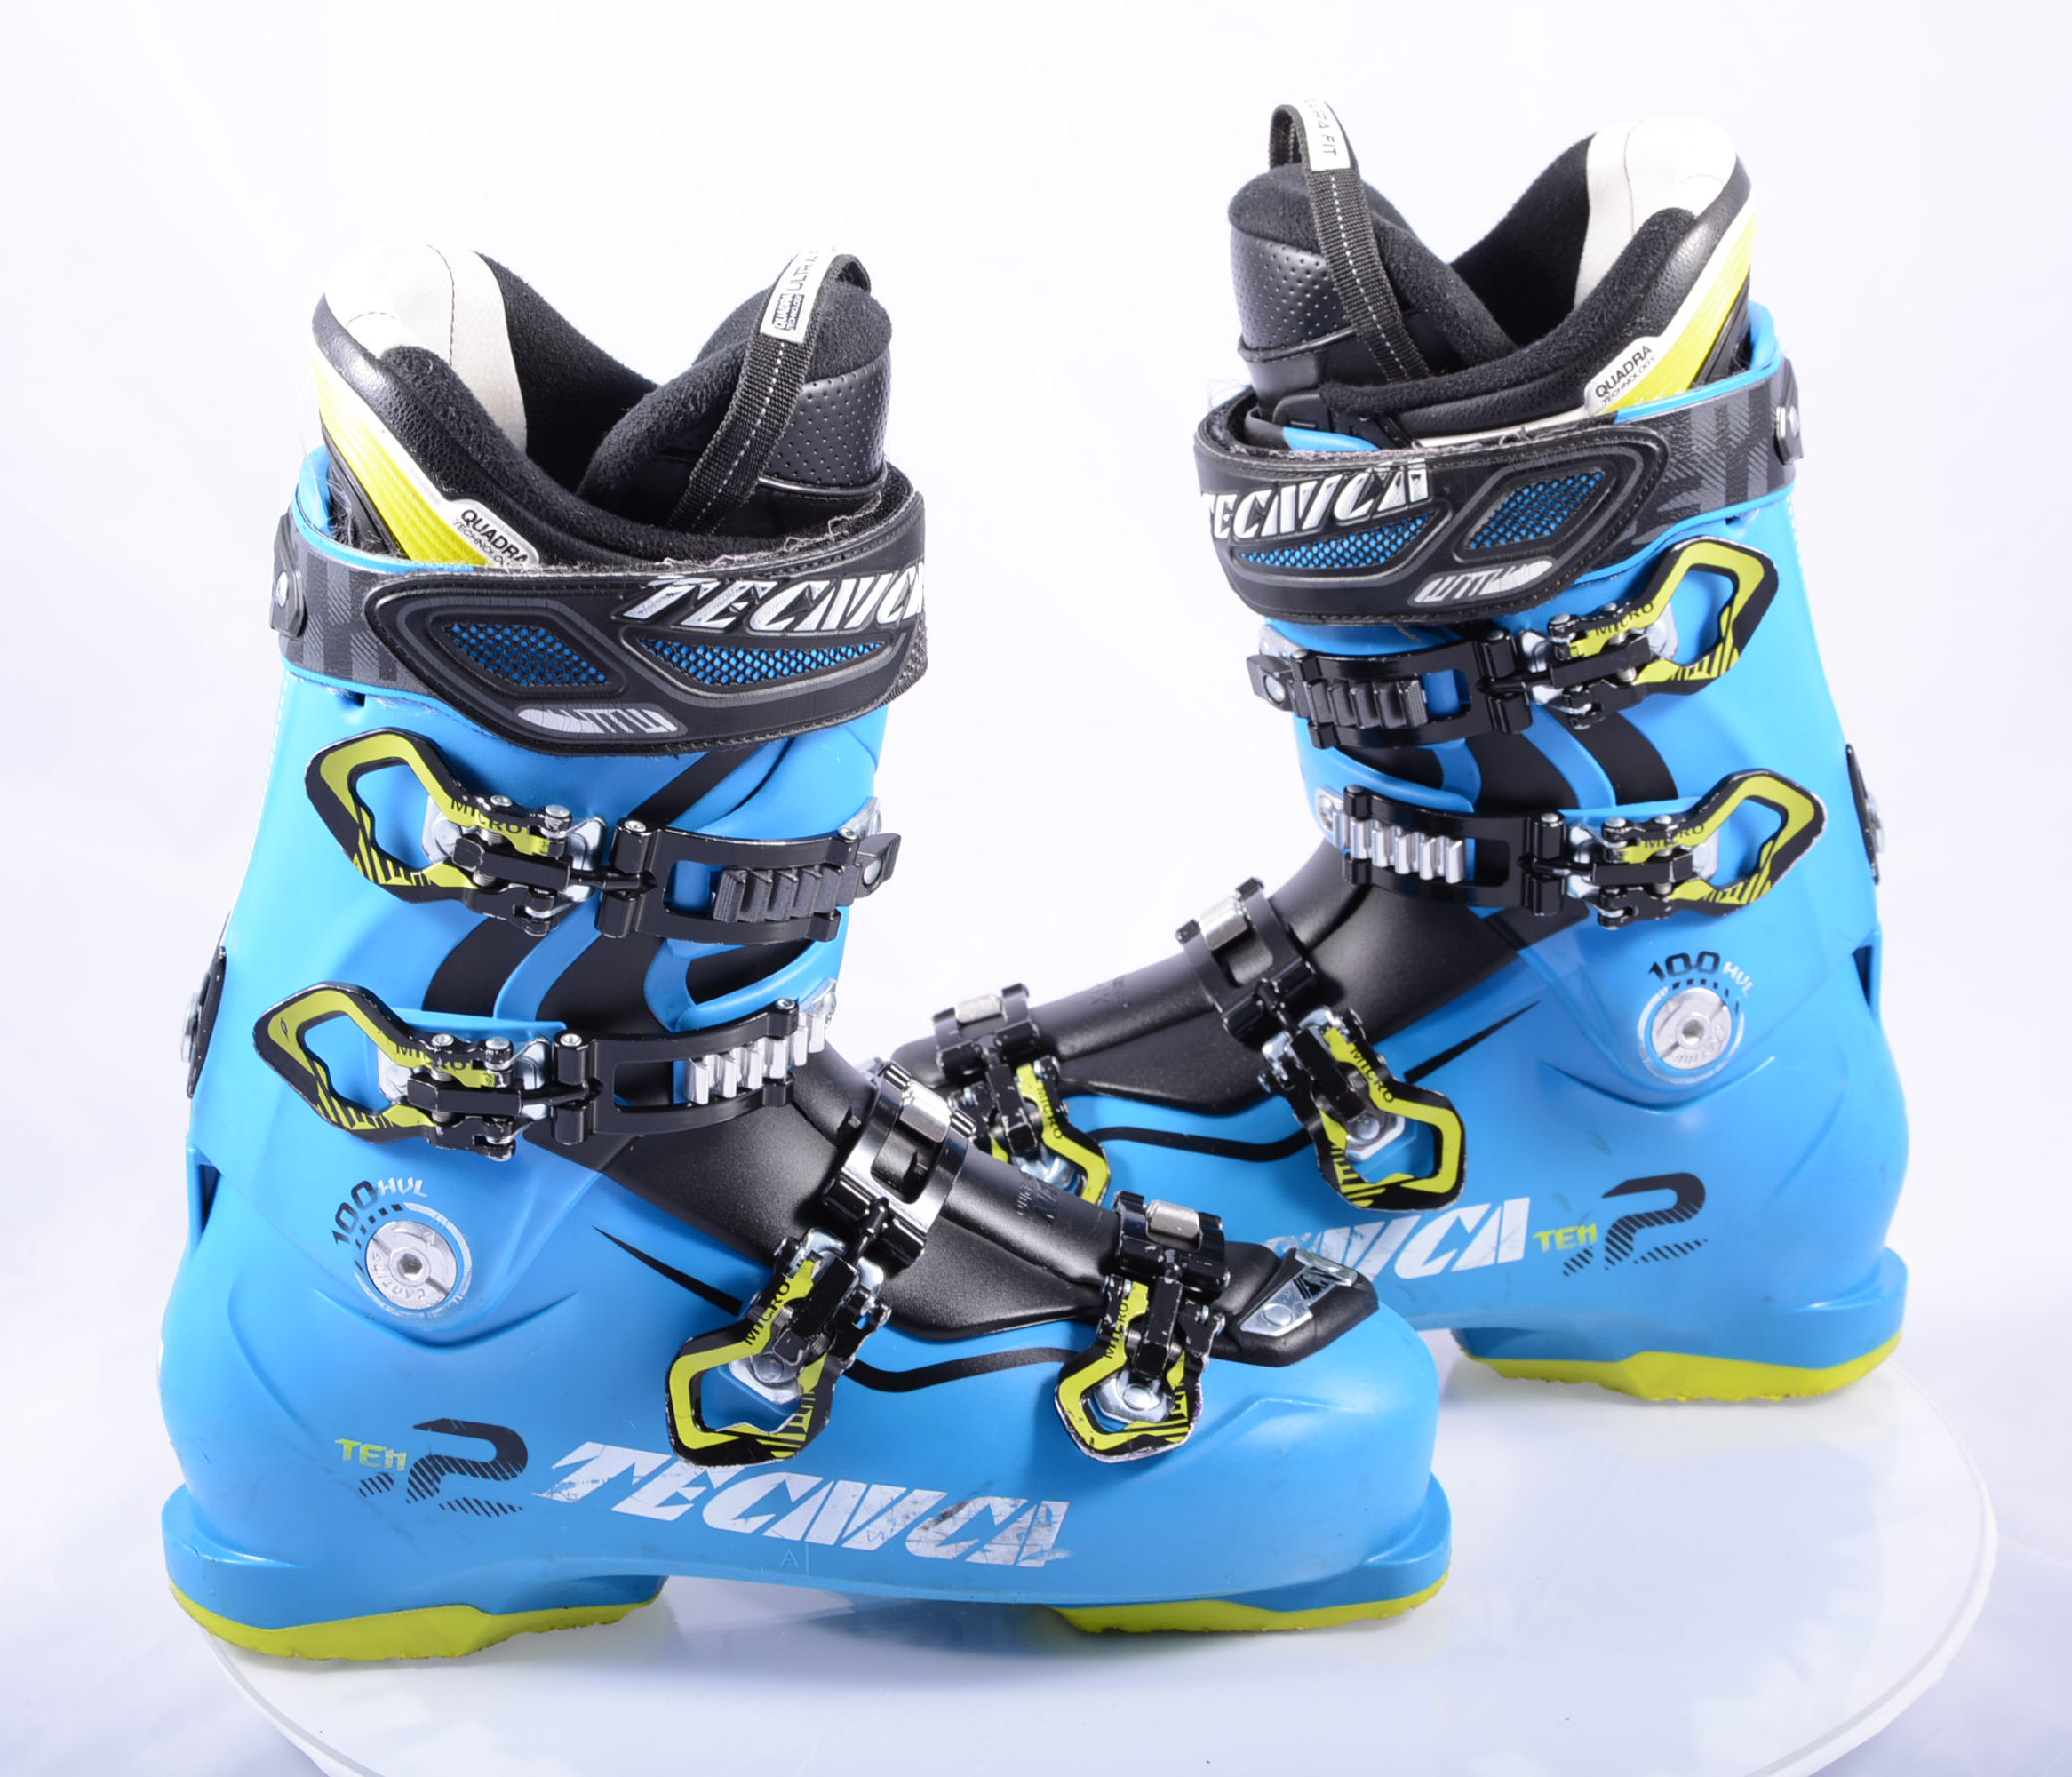 ski boots TECNICA TEN.2 HVL blue, QUADRA ULTRA FIT hvl, REBOUND - Mardosport.com